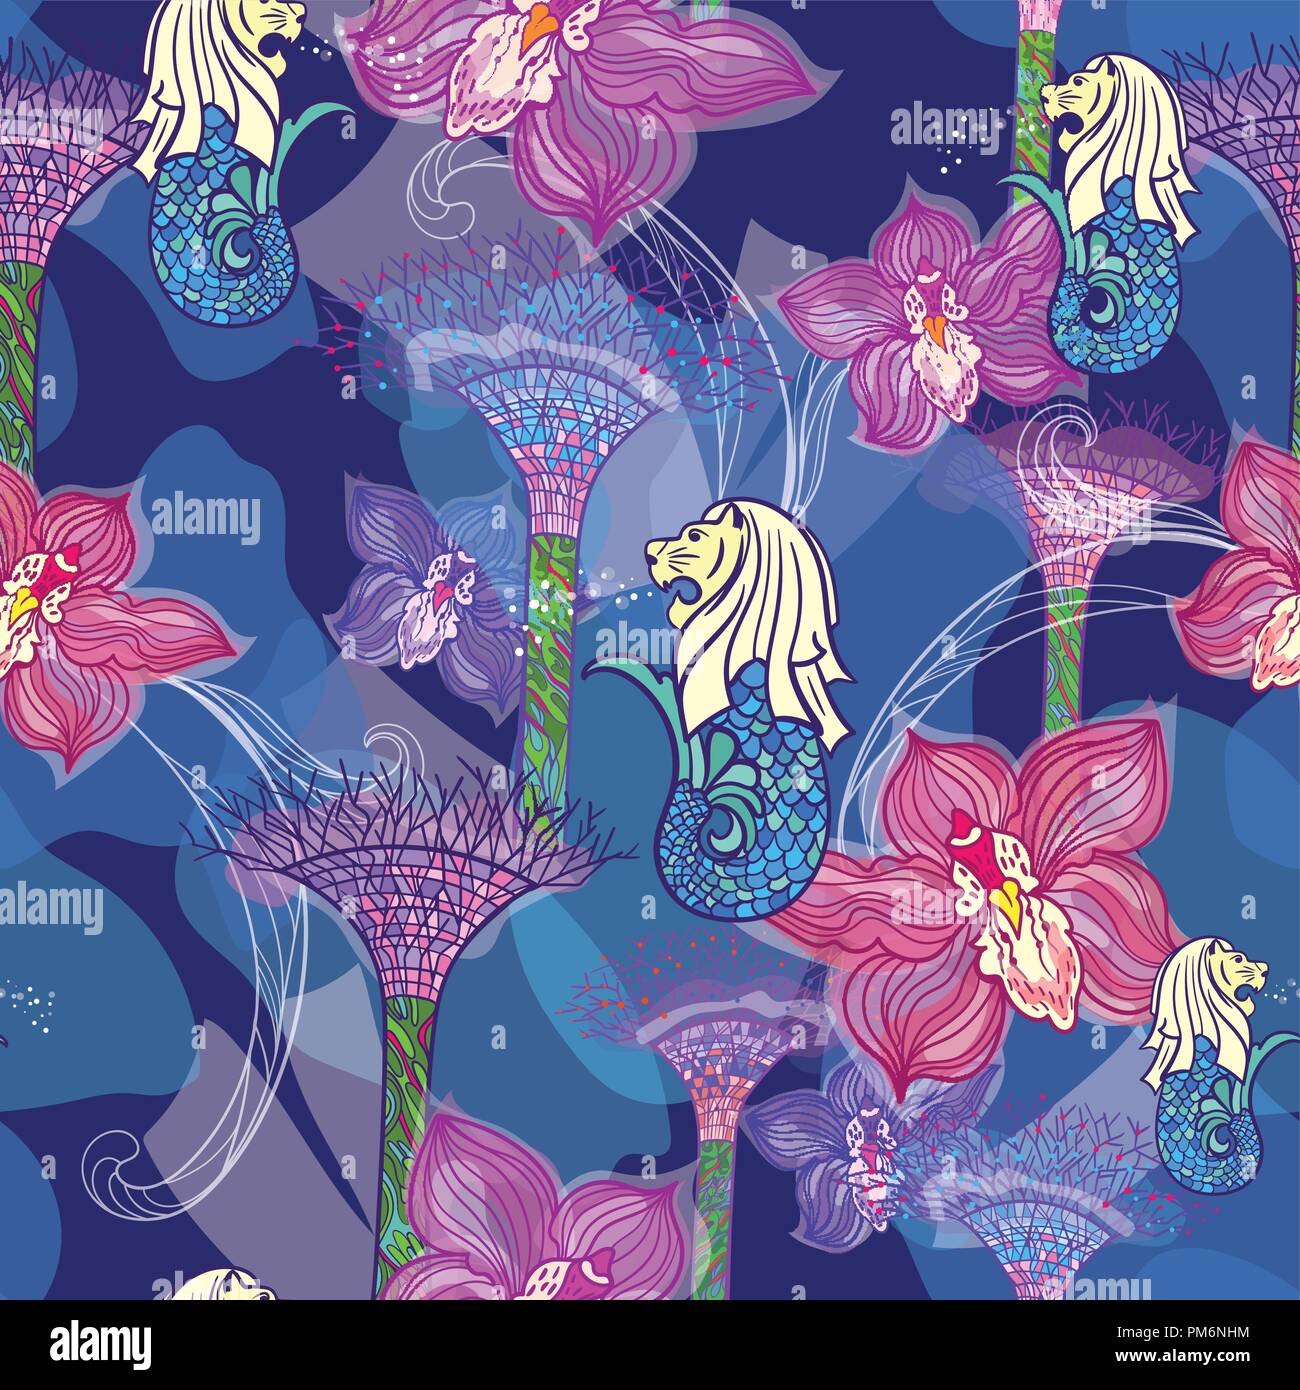 Impression transparente avec orchidée, fleur, Merlion et jardins au bord de la Bay, sur fond bleu indigo Illustration de Vecteur